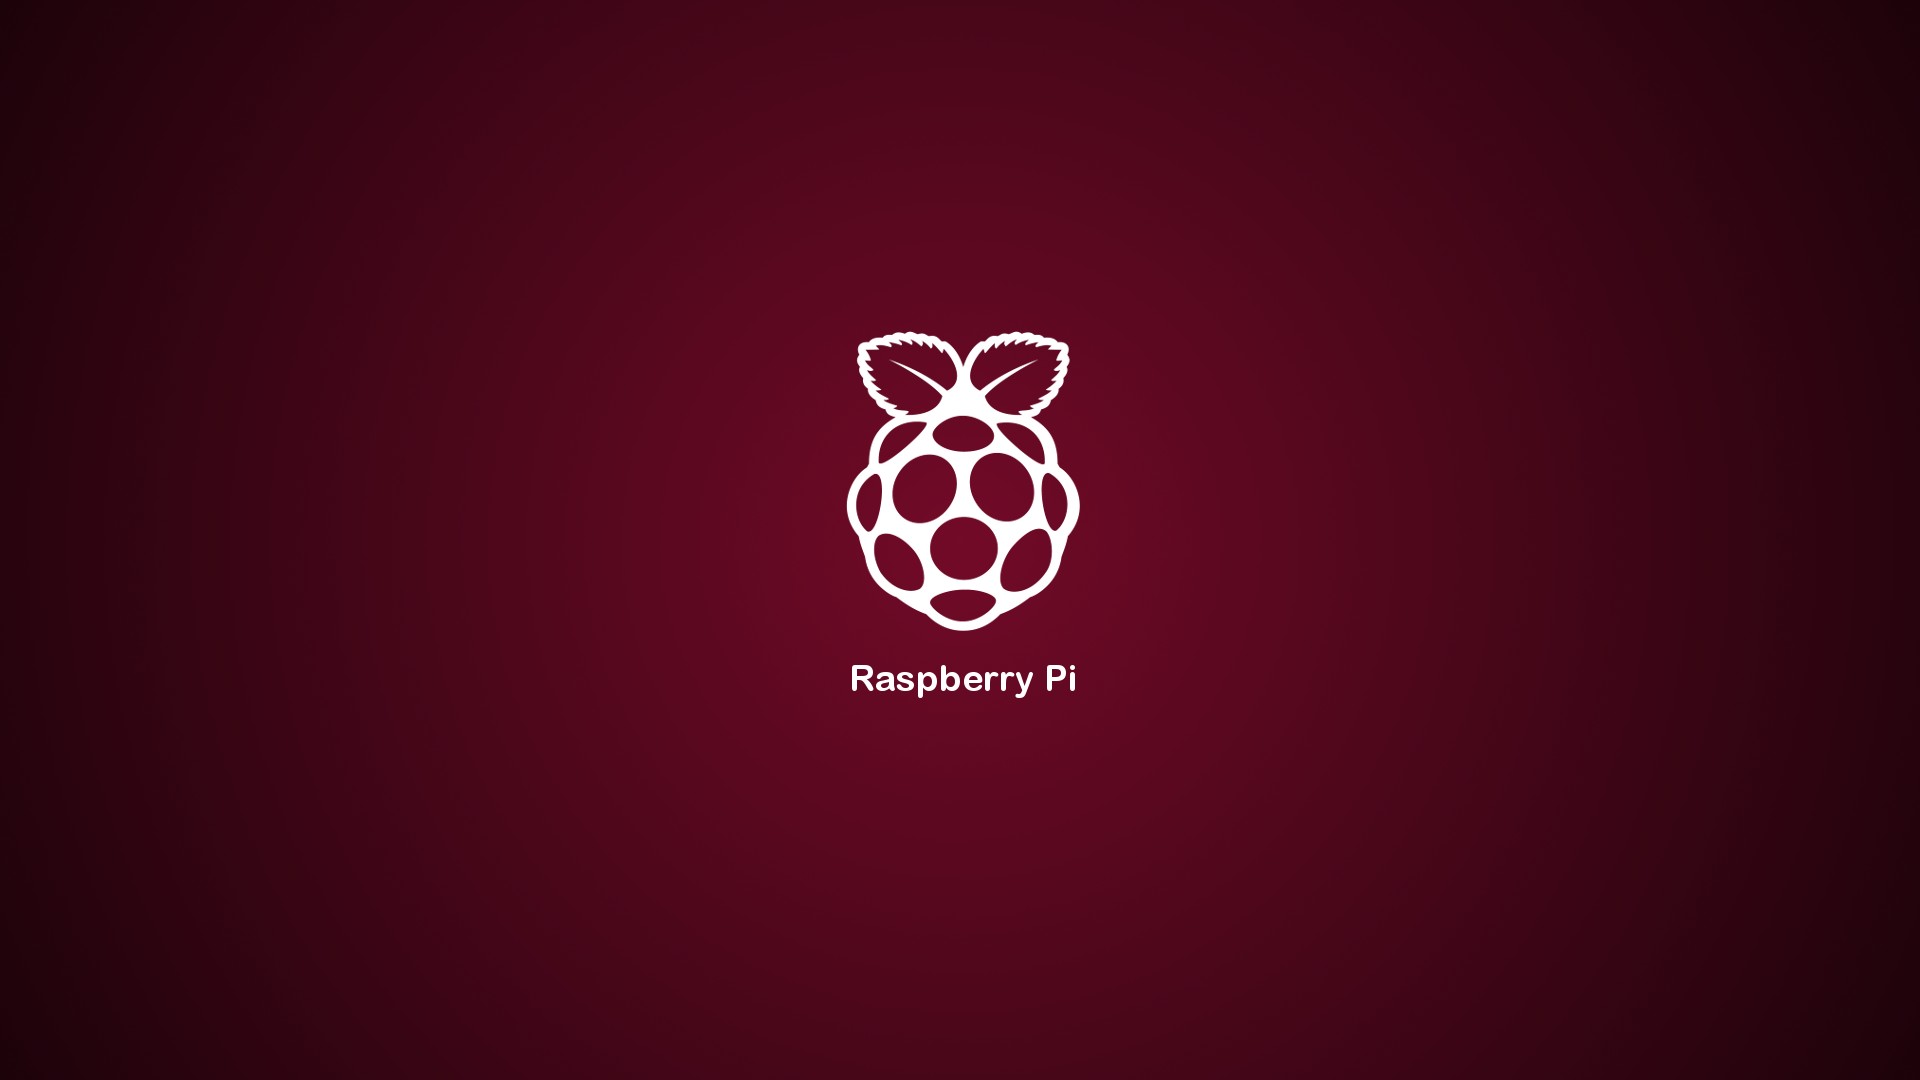 Wallpapers Linux rasberry pi hi-tech on the desktop